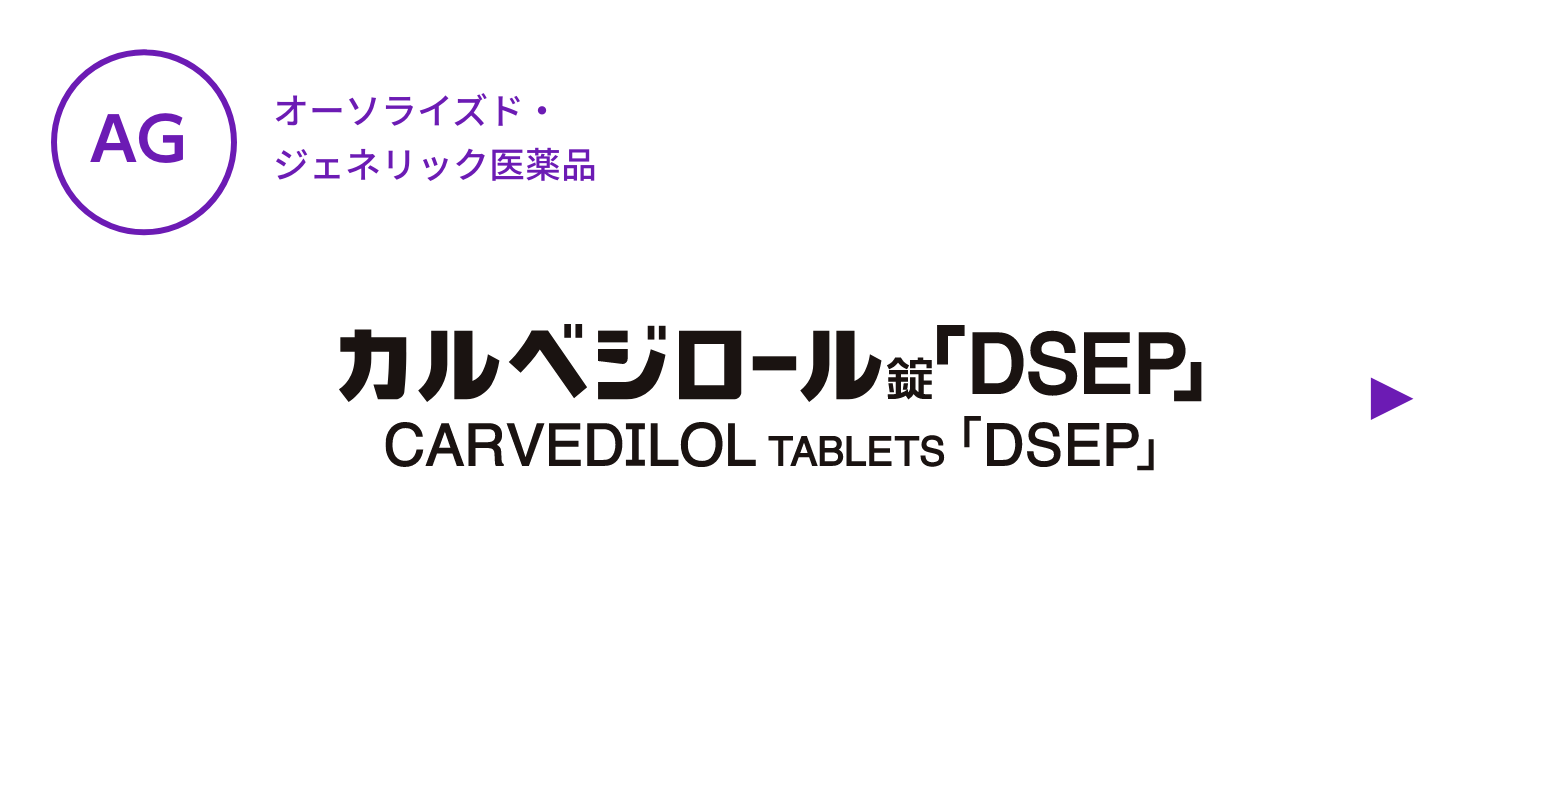 【AG】カルベジロール錠「DSEP」